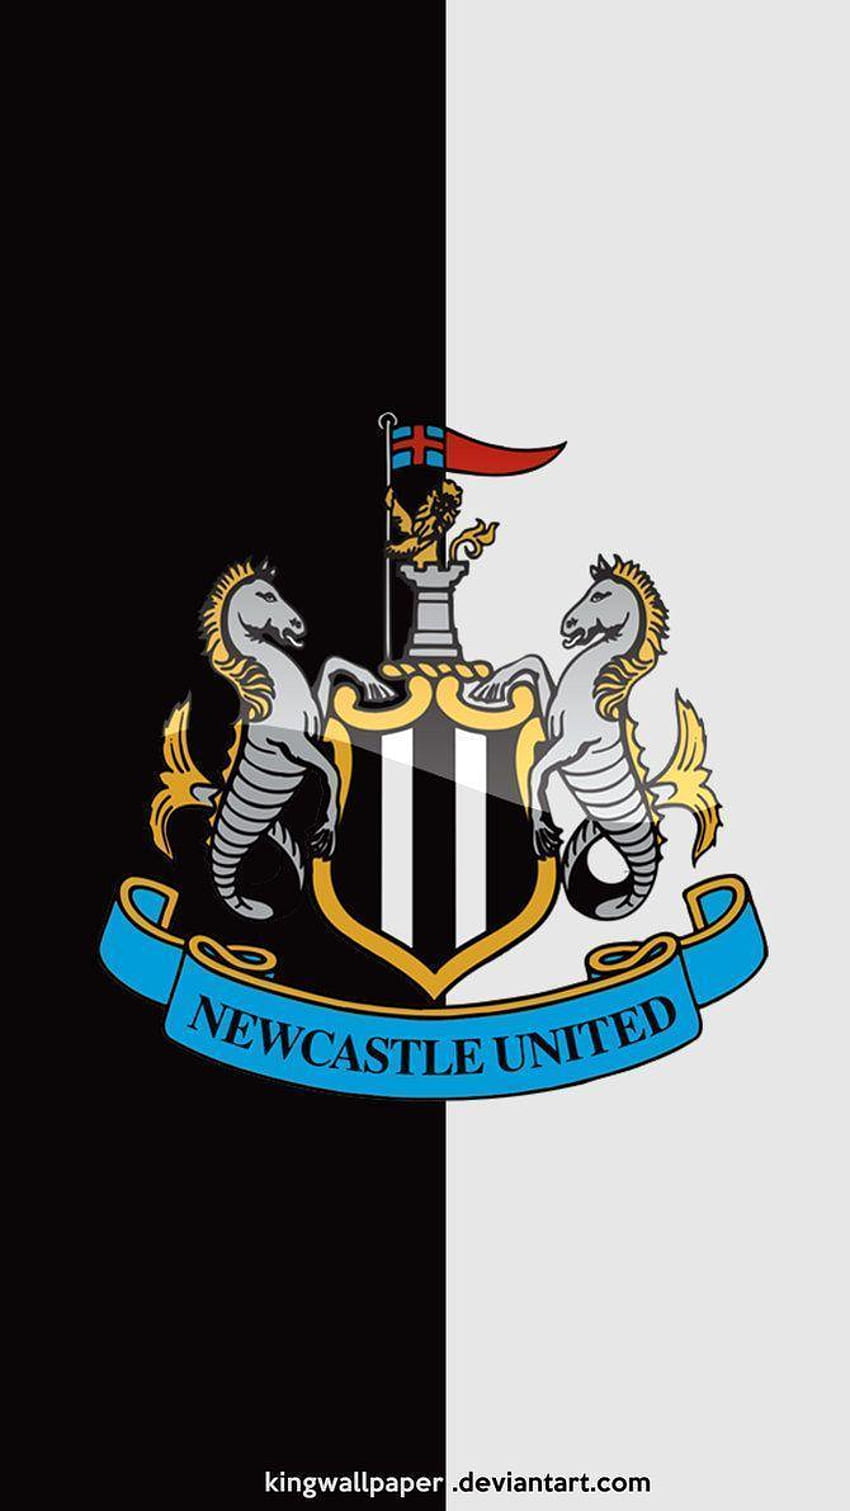 Nufc Newcastle United fondo de pantalla del teléfono